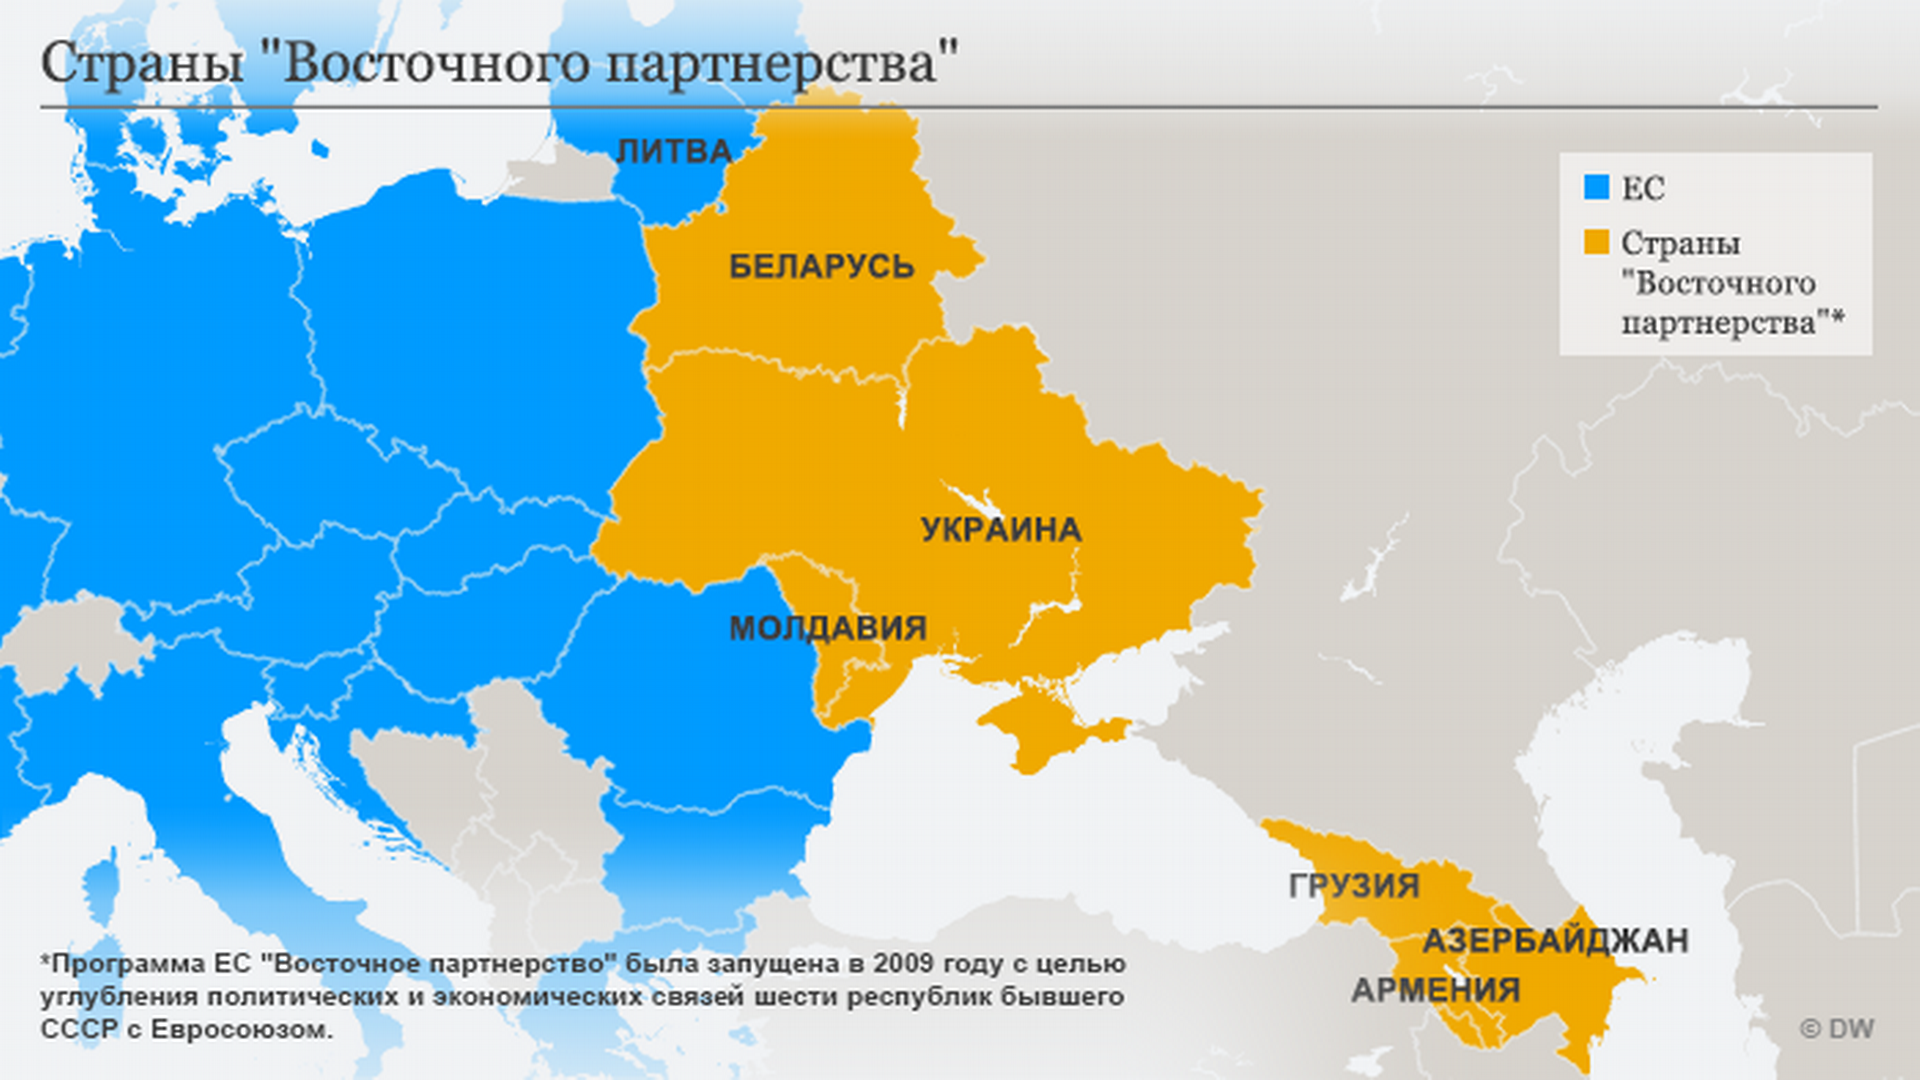 Украина беларусь молдова. Программа Восточное партнерство. Восточное партнерство ЕС. Карта Украины и Евросоюза. Программа Восточное партнерство ЕС.